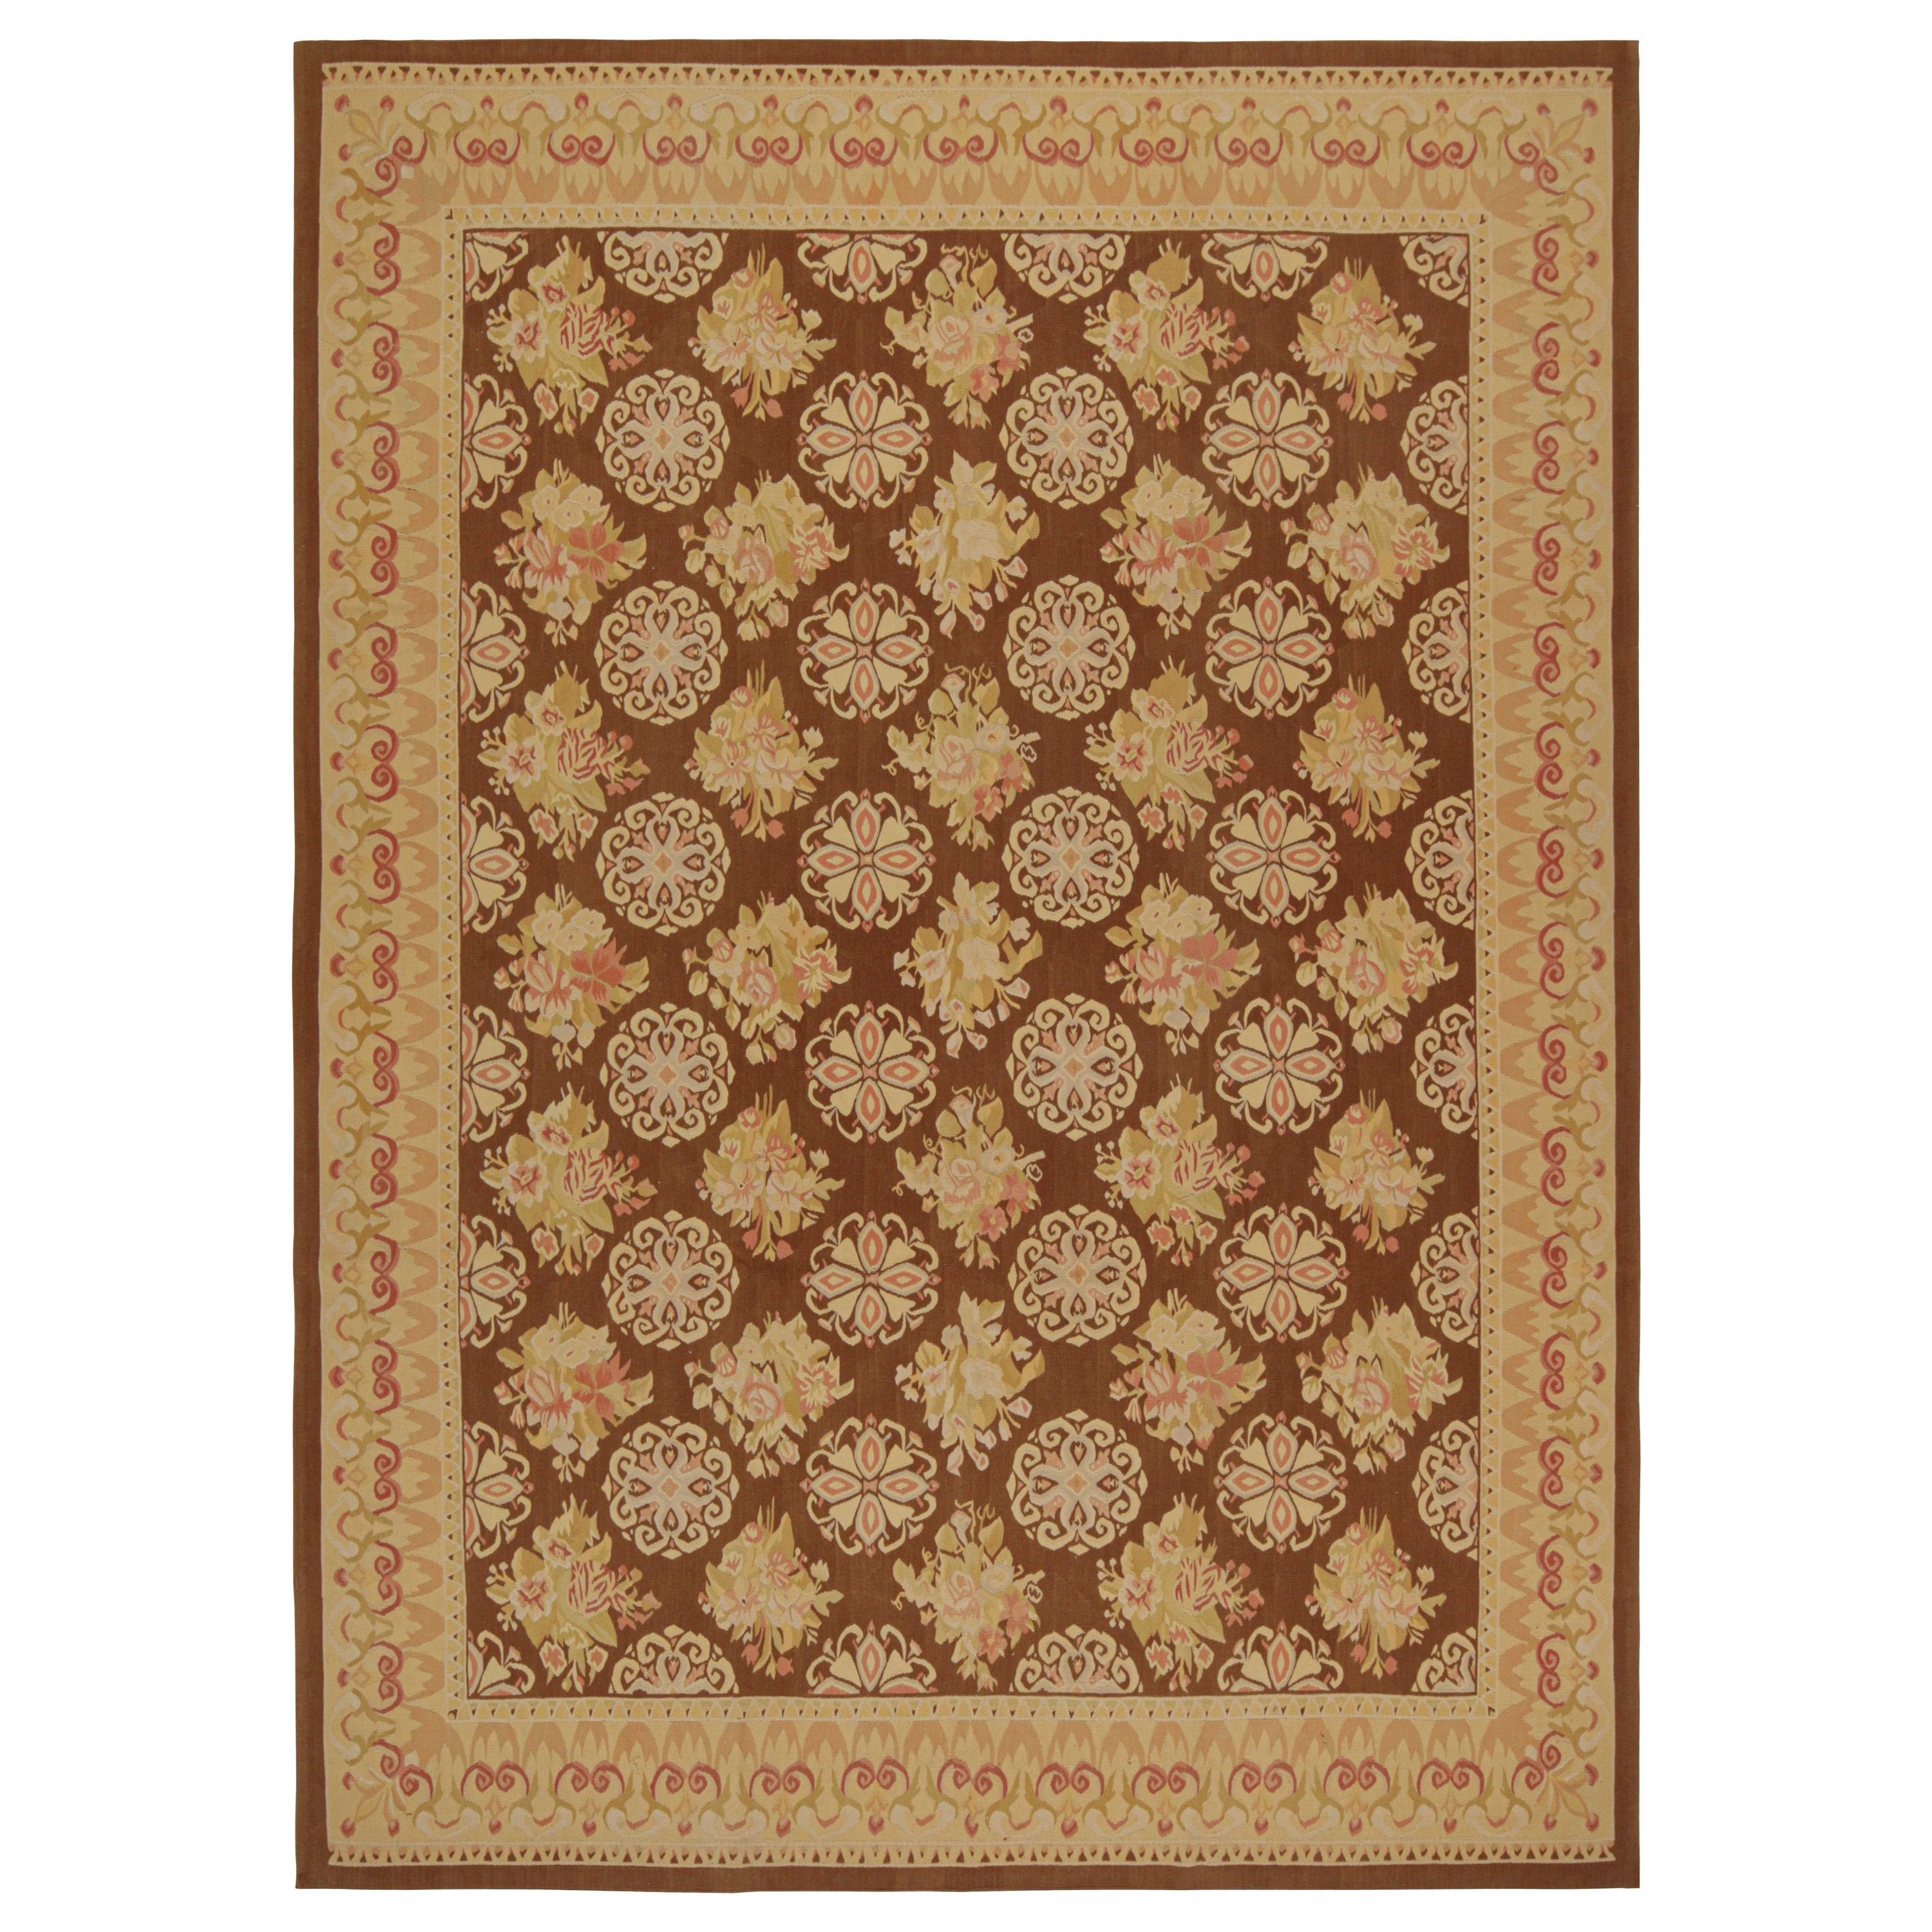 Rug & Kilim's Aubusson Flatweave Style Teppich in Braun mit Beige Blumenmustern